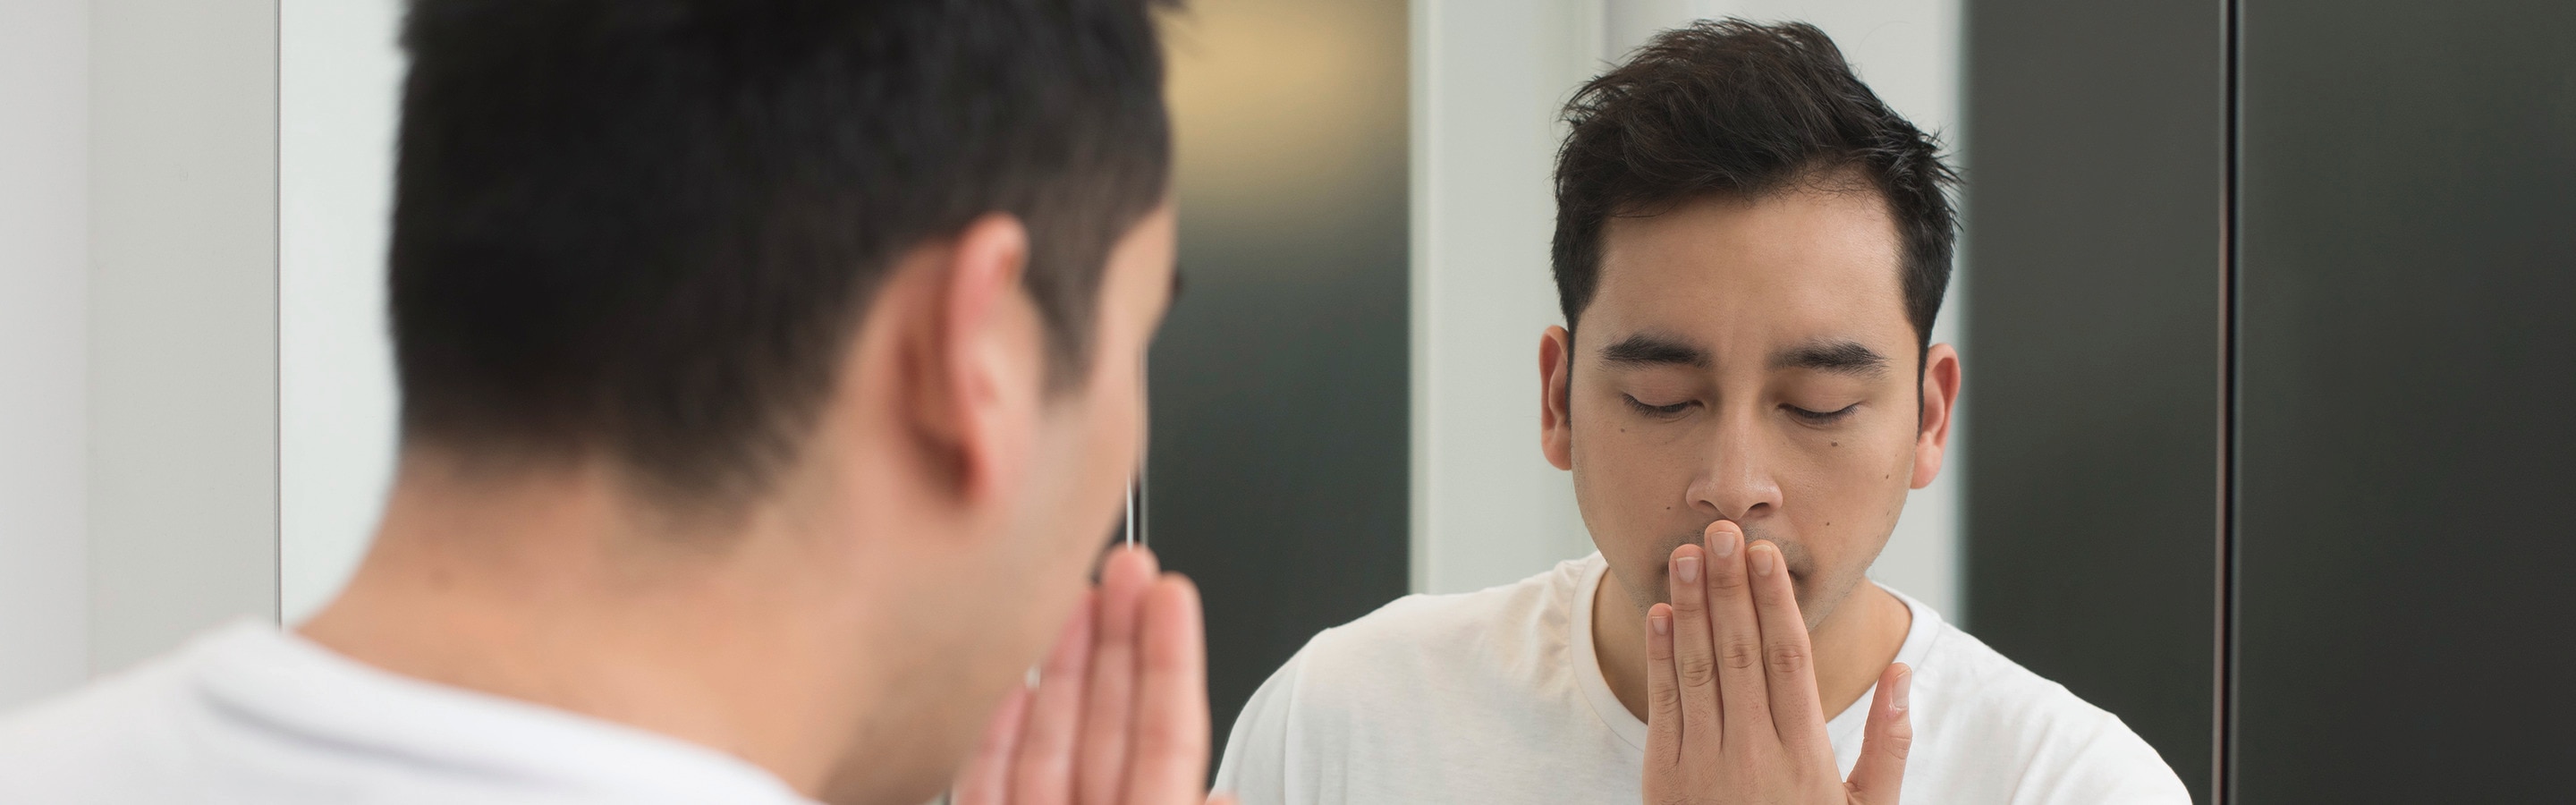 Fünf Mythen über Mundgeruch